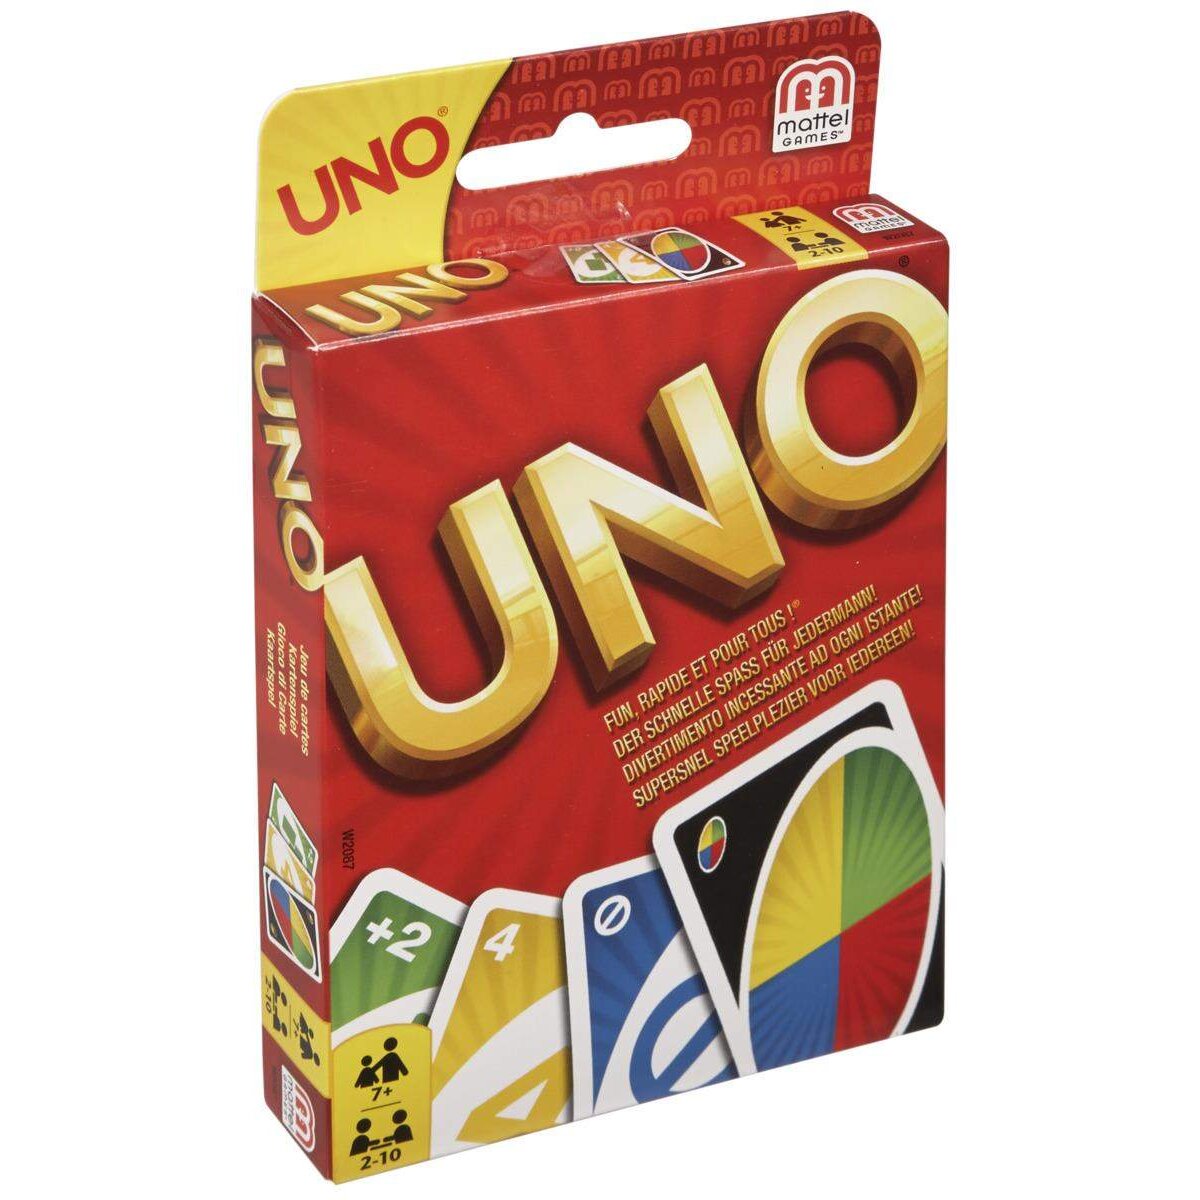 Mattel UNO Original